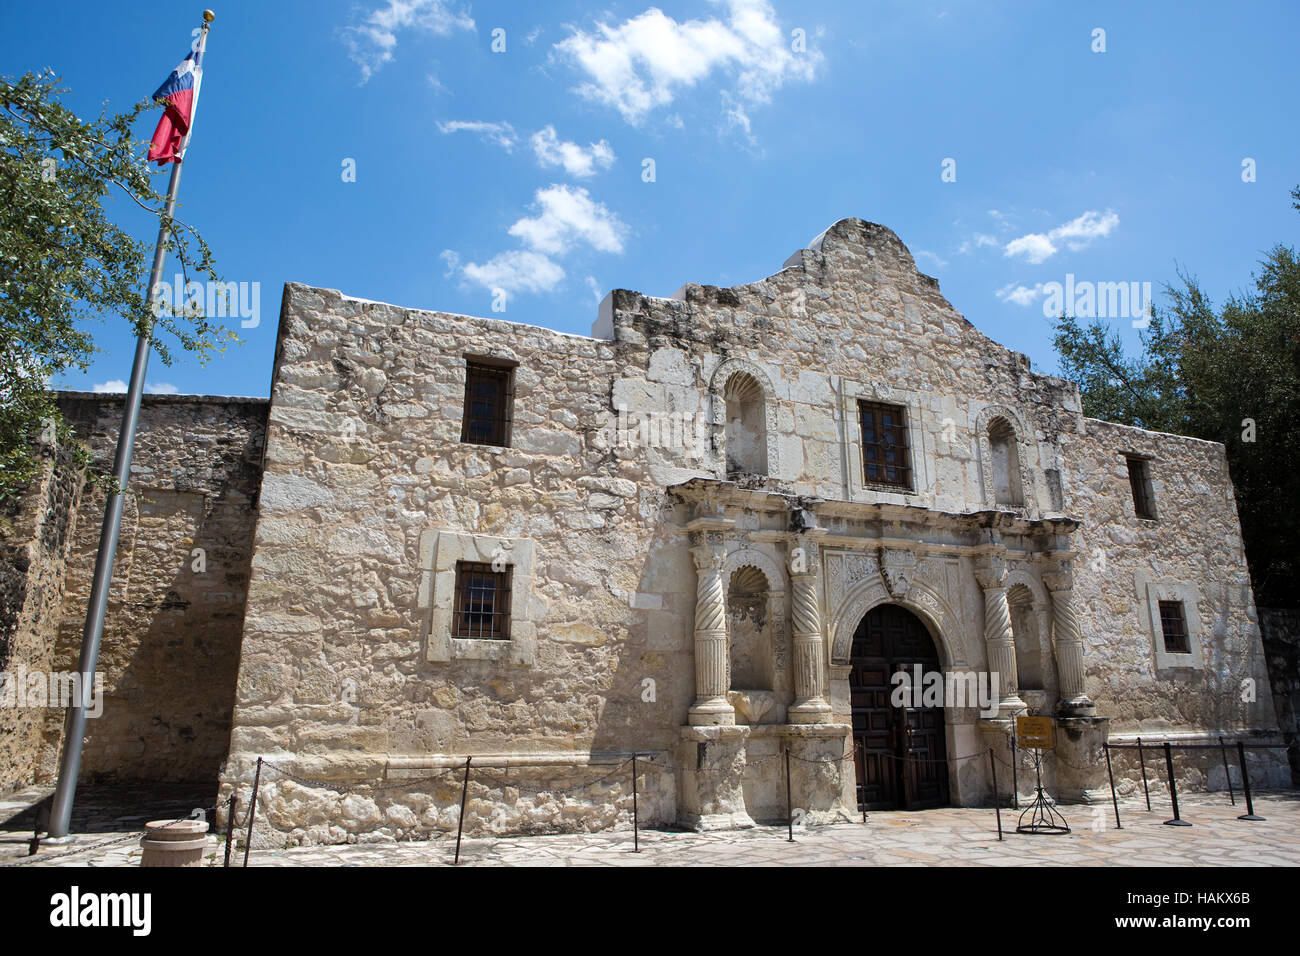 L'Alamo à San Antonio, Texas, où la fameuse bataille pour l'indépendance du Texas contre le Mexique a eu lieu en 1836. Banque D'Images